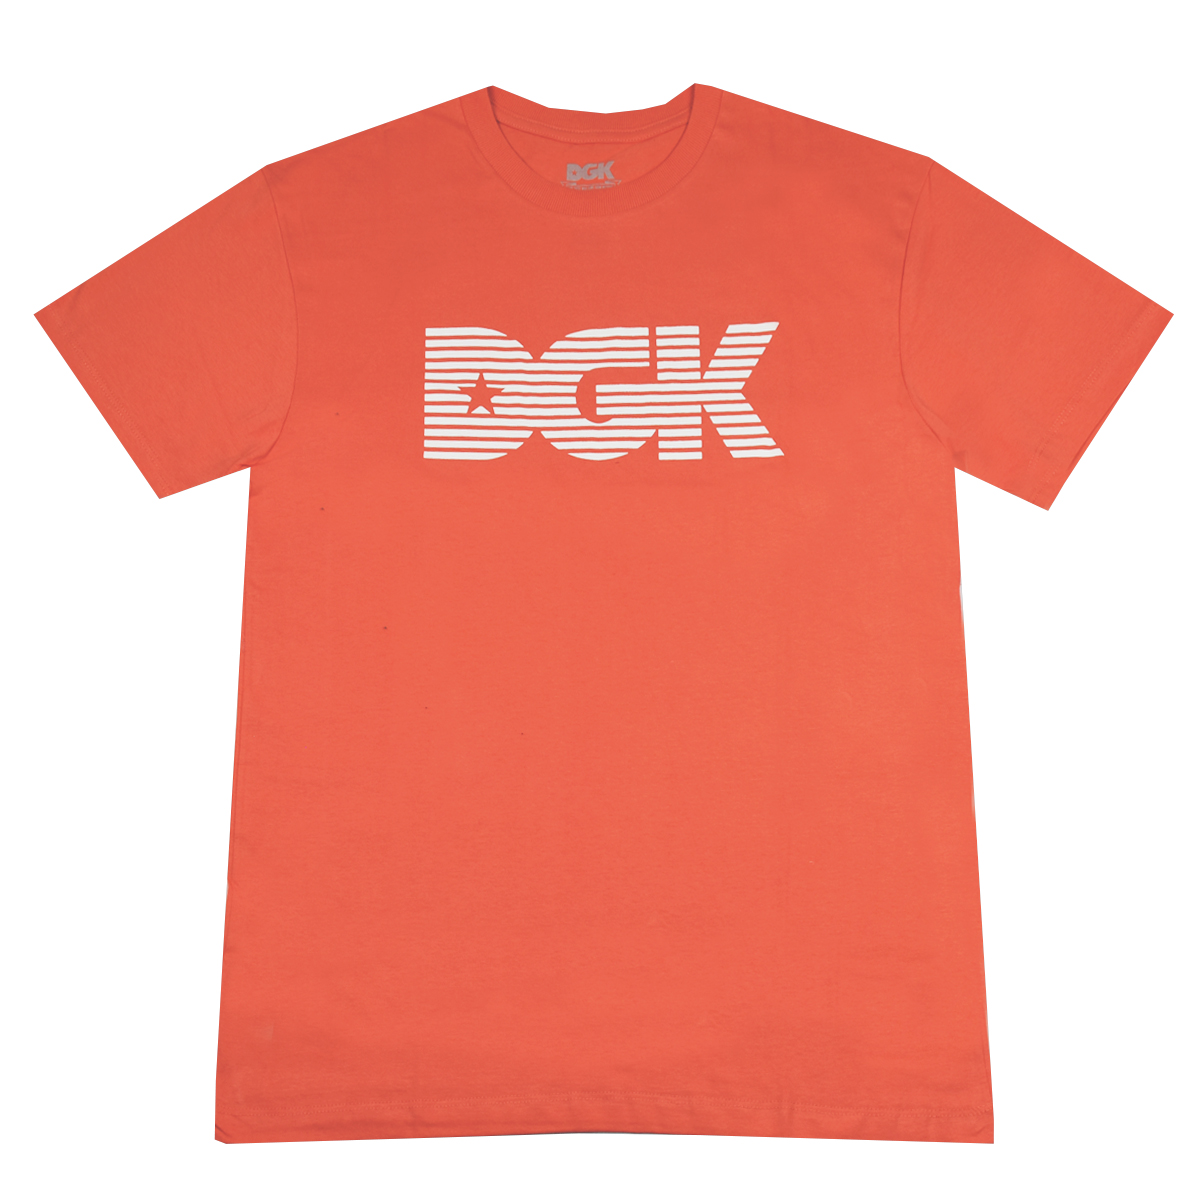 Camiseta DGK Levels Hot Coral